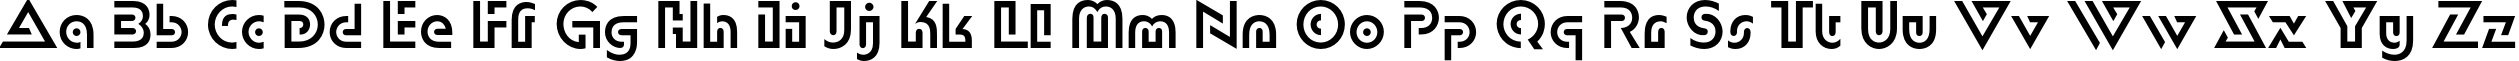 Пример написания английского алфавита шрифтом DublonC